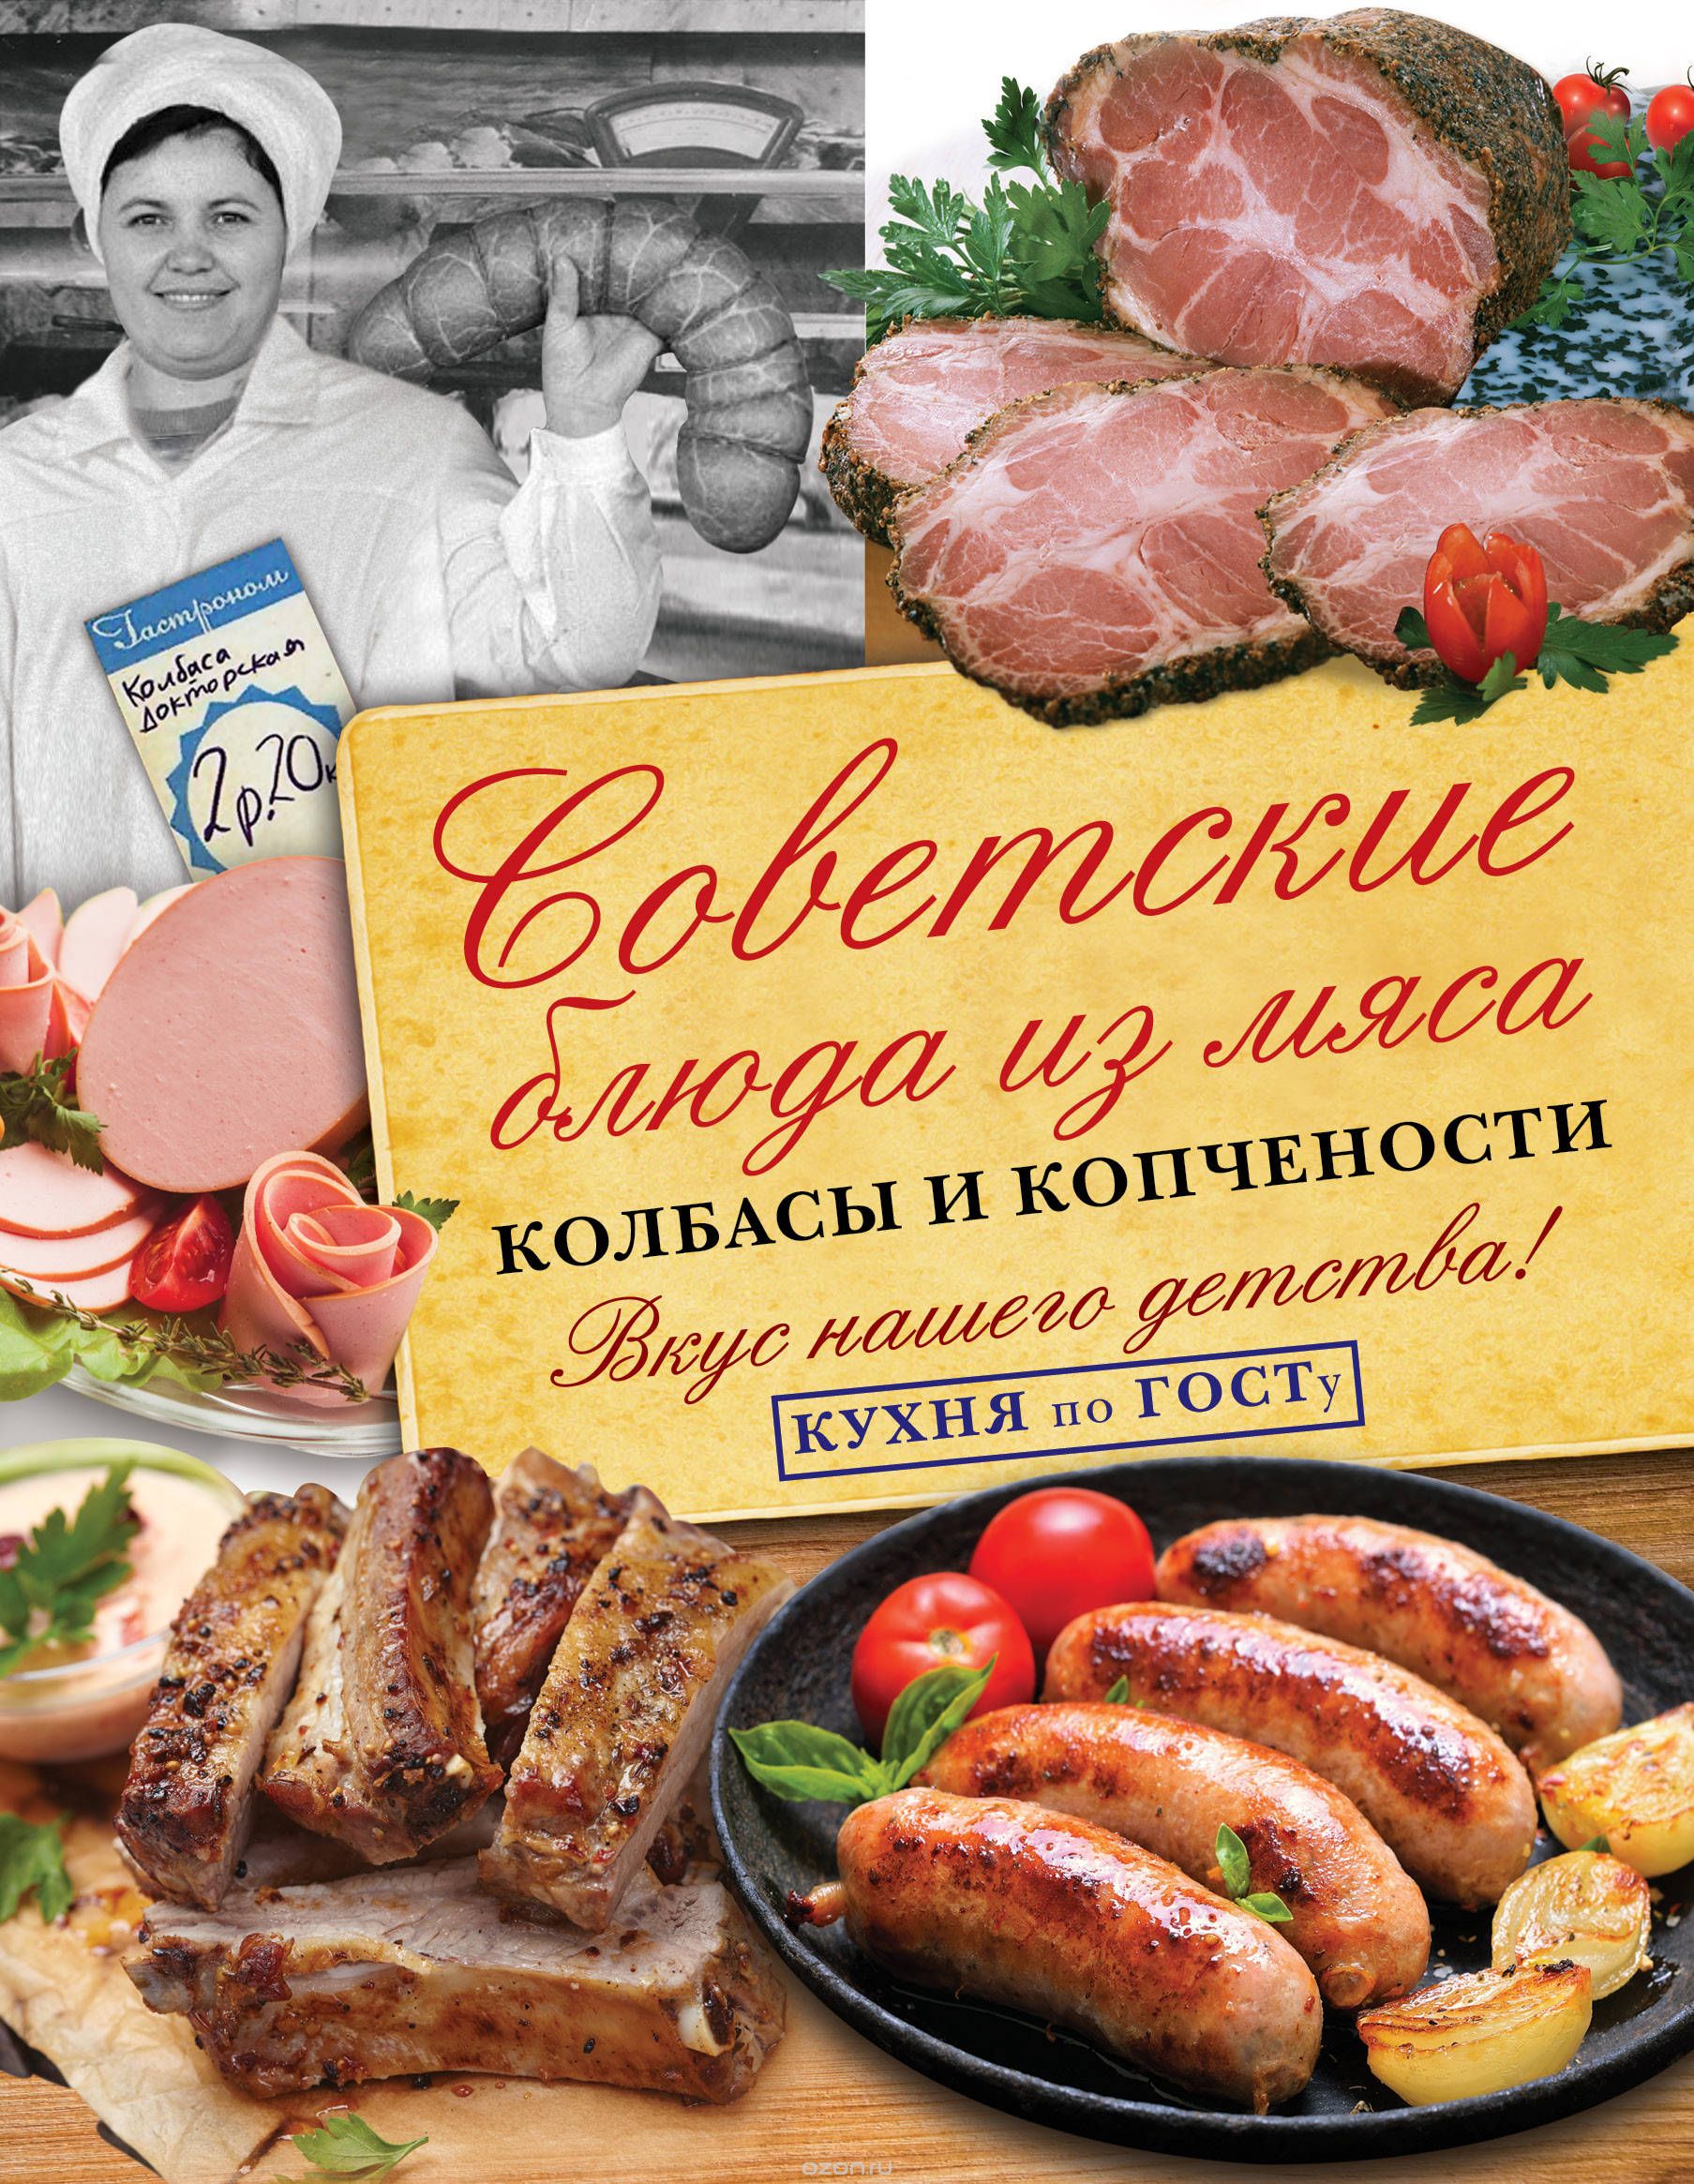 Советские блюда из мяса, колбасы и копчености, В. В. Большаков